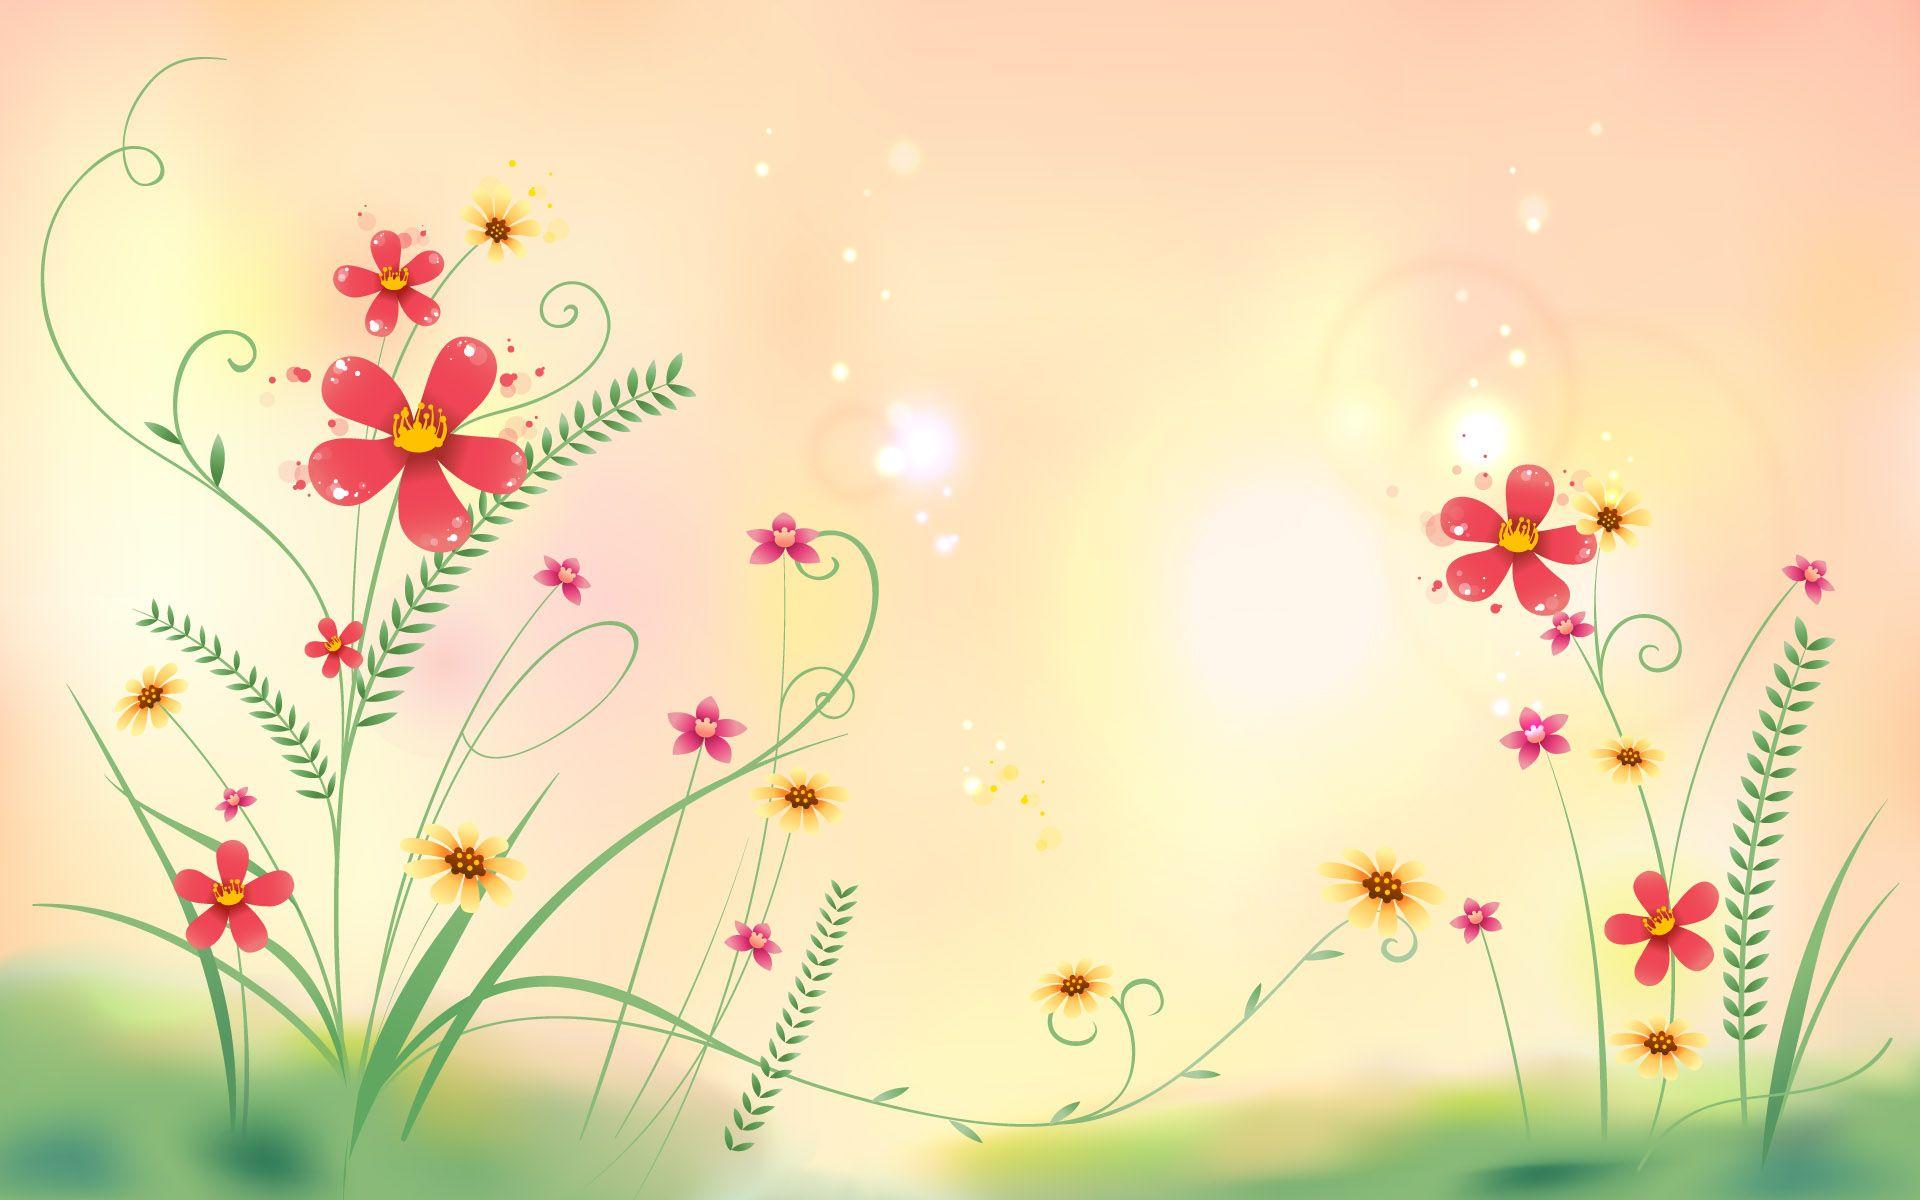 Cute Flowers Field Illustration Desktop Wallpaper